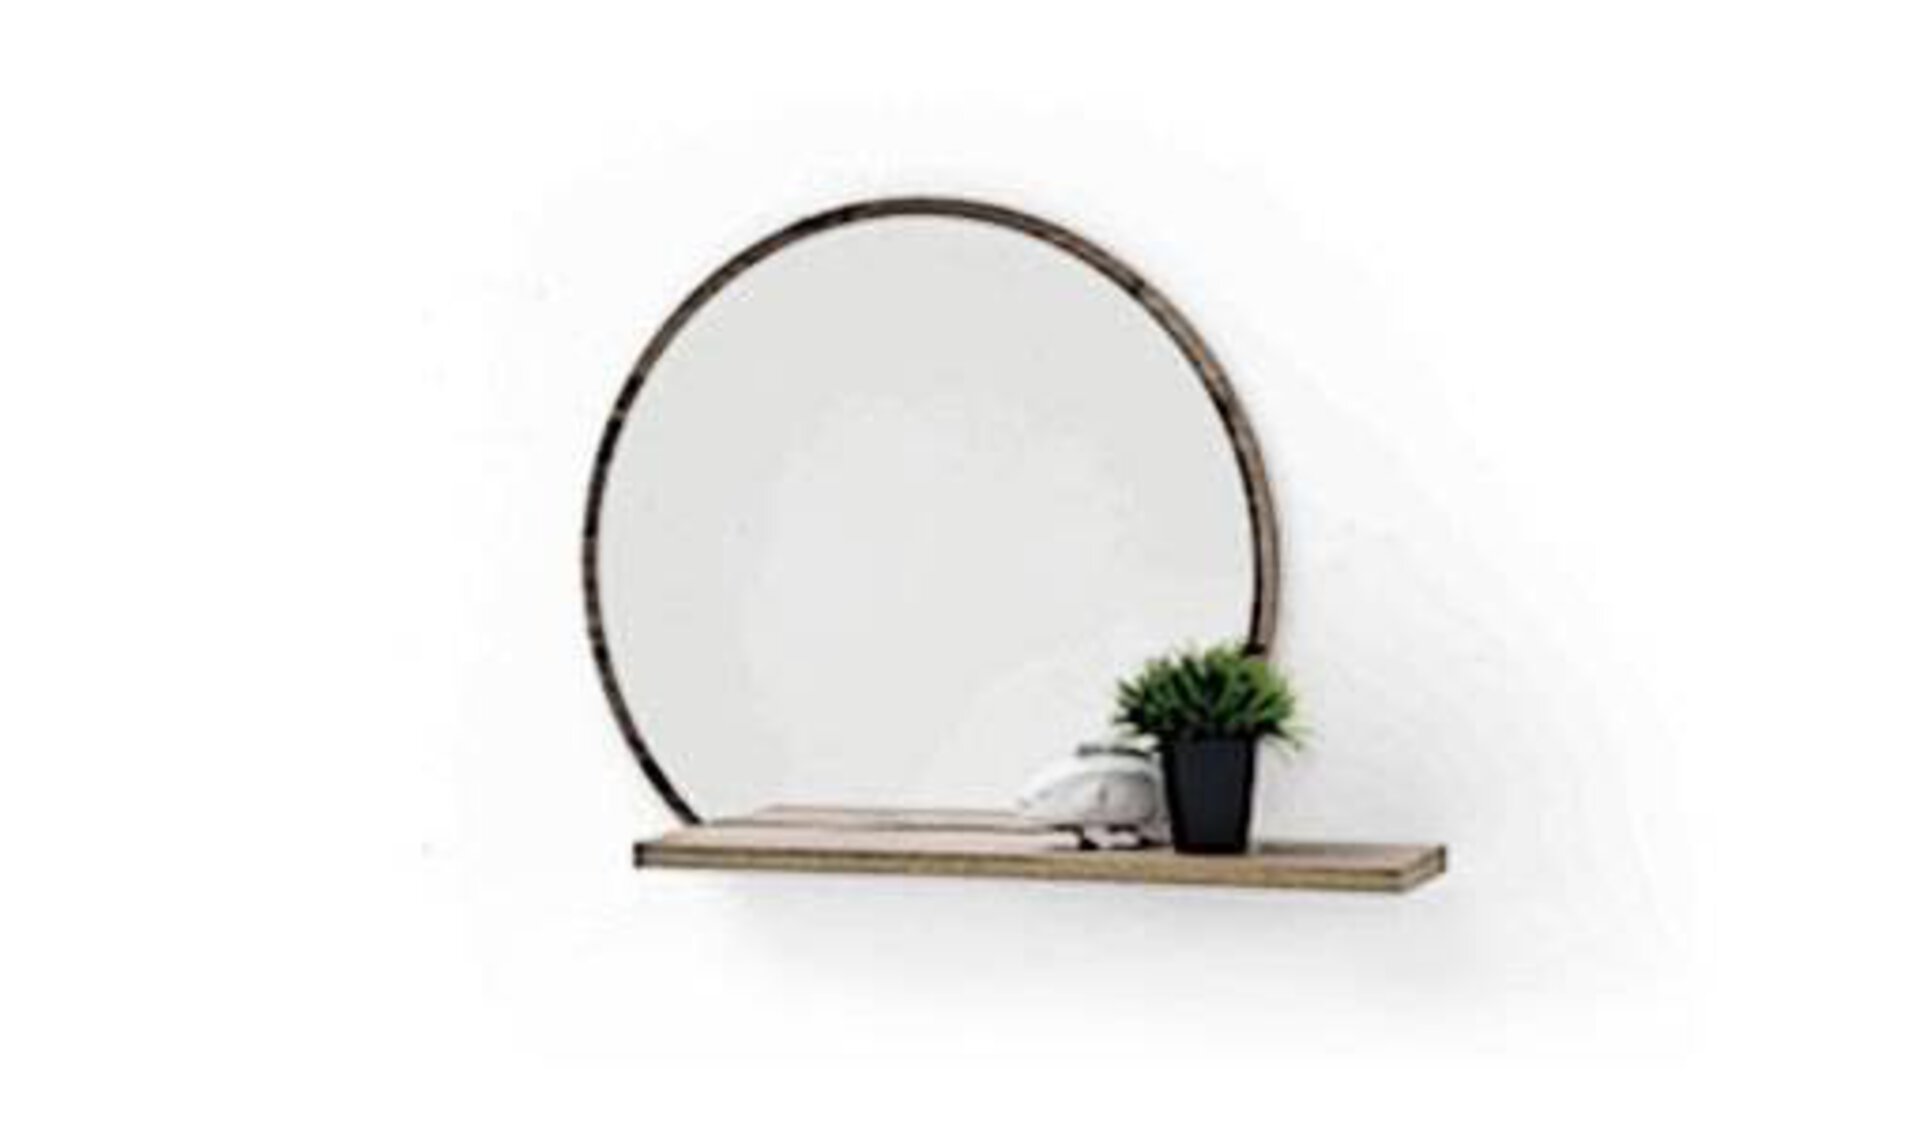 Garderobenspiegel als Icon für alle Spiegel innerhalb "Flur und Garderoben". Hier abgebildet ist ein runder Spiegel mit dezentem Holzrahmen und fest verbundenem Holzbrett unten, als Ablage für diverse Utensilien.